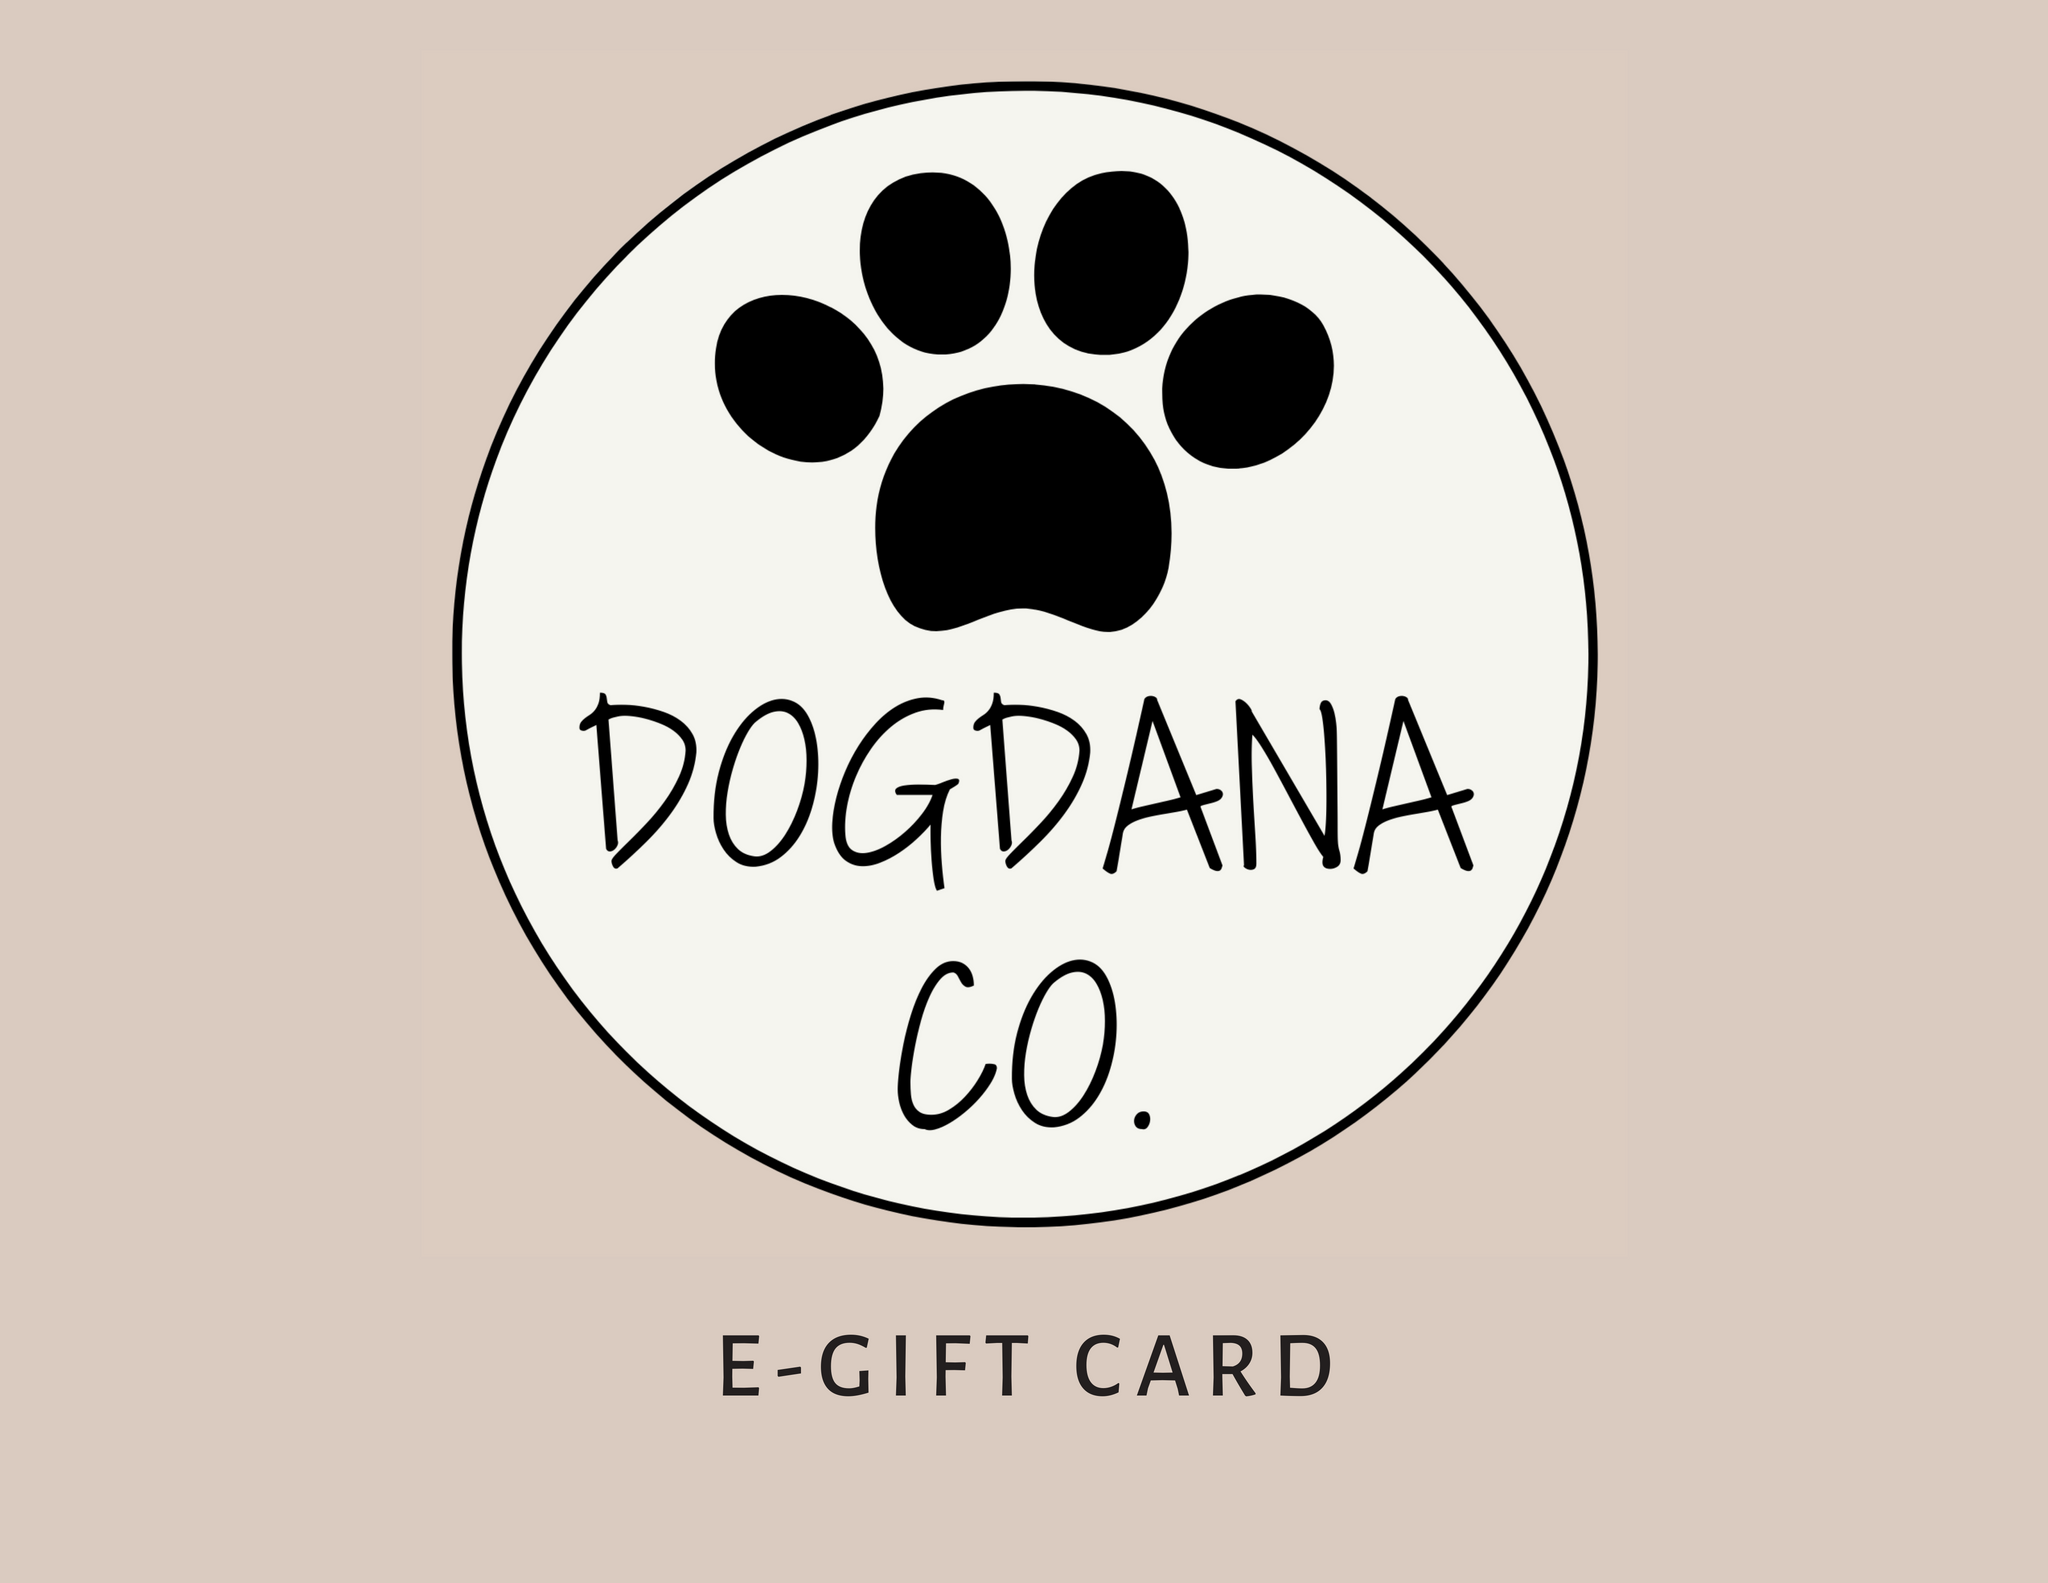 Dogdana Co. Gift Card